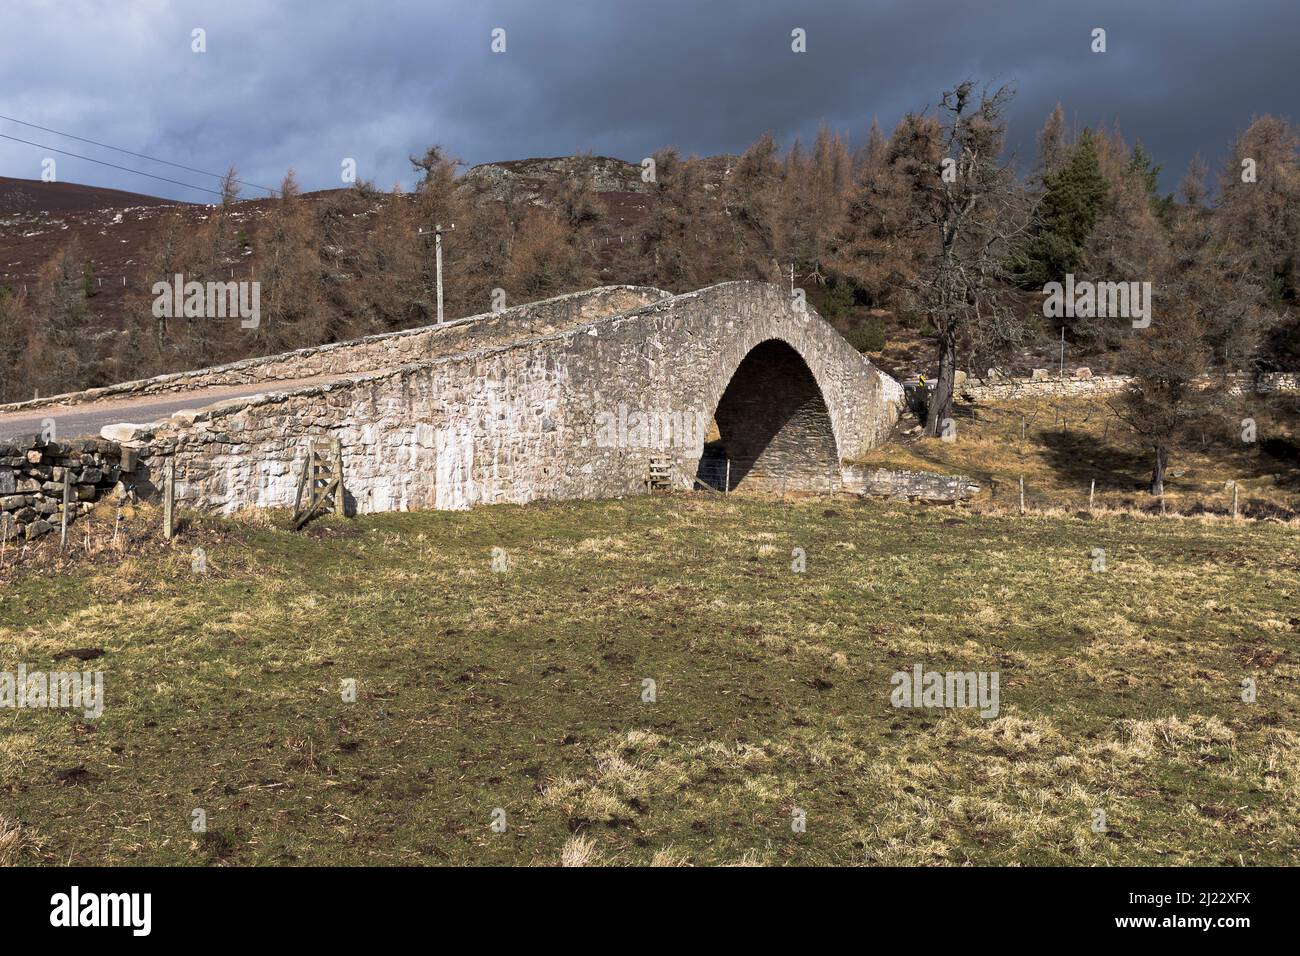 dh Gairnshiel Bridge GLEN GAIRN ABERDEENSHIRE ponti in pietra scozzese humpback Scozia hump back Road A939 Glengairn Foto Stock